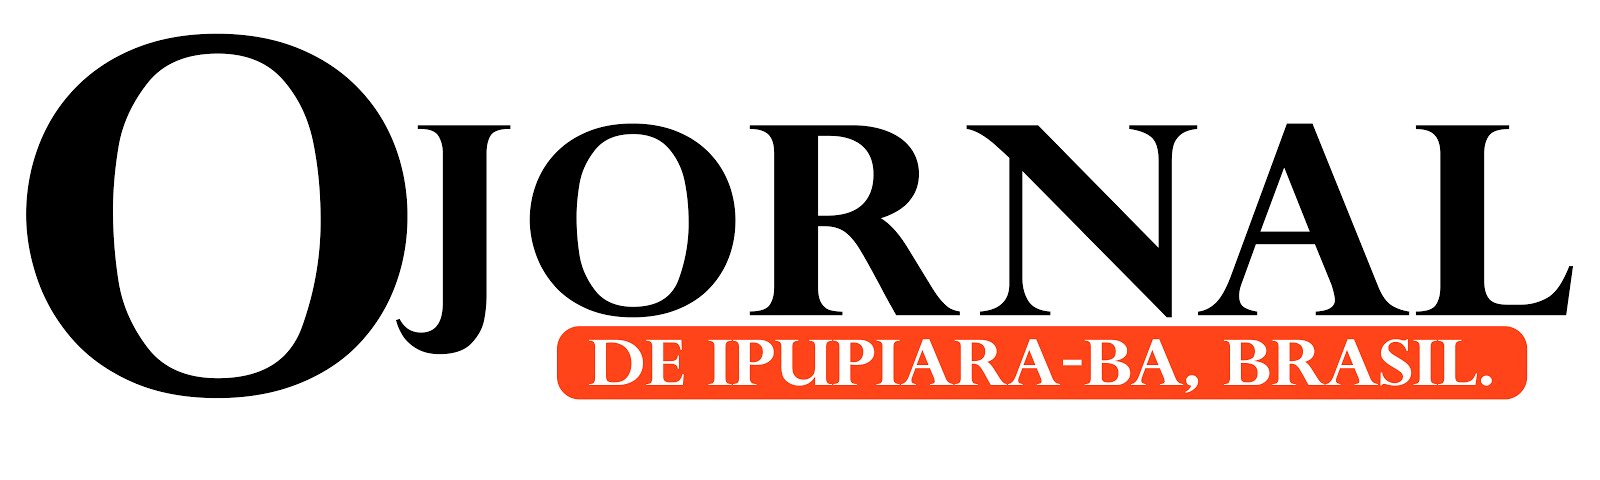 O JORNAL DE IPUPIARA